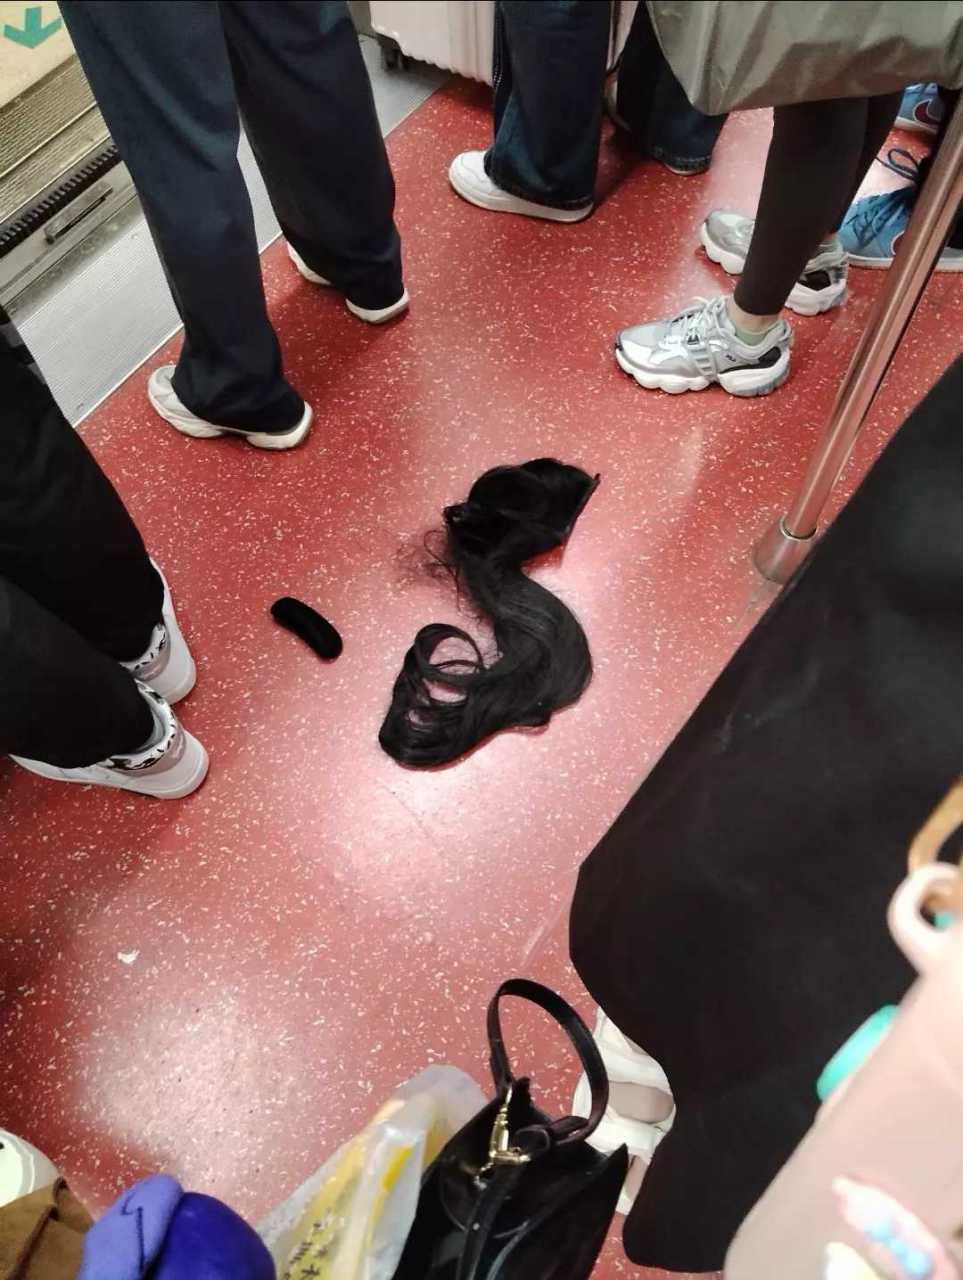 女生地铁挤掉鞋图片